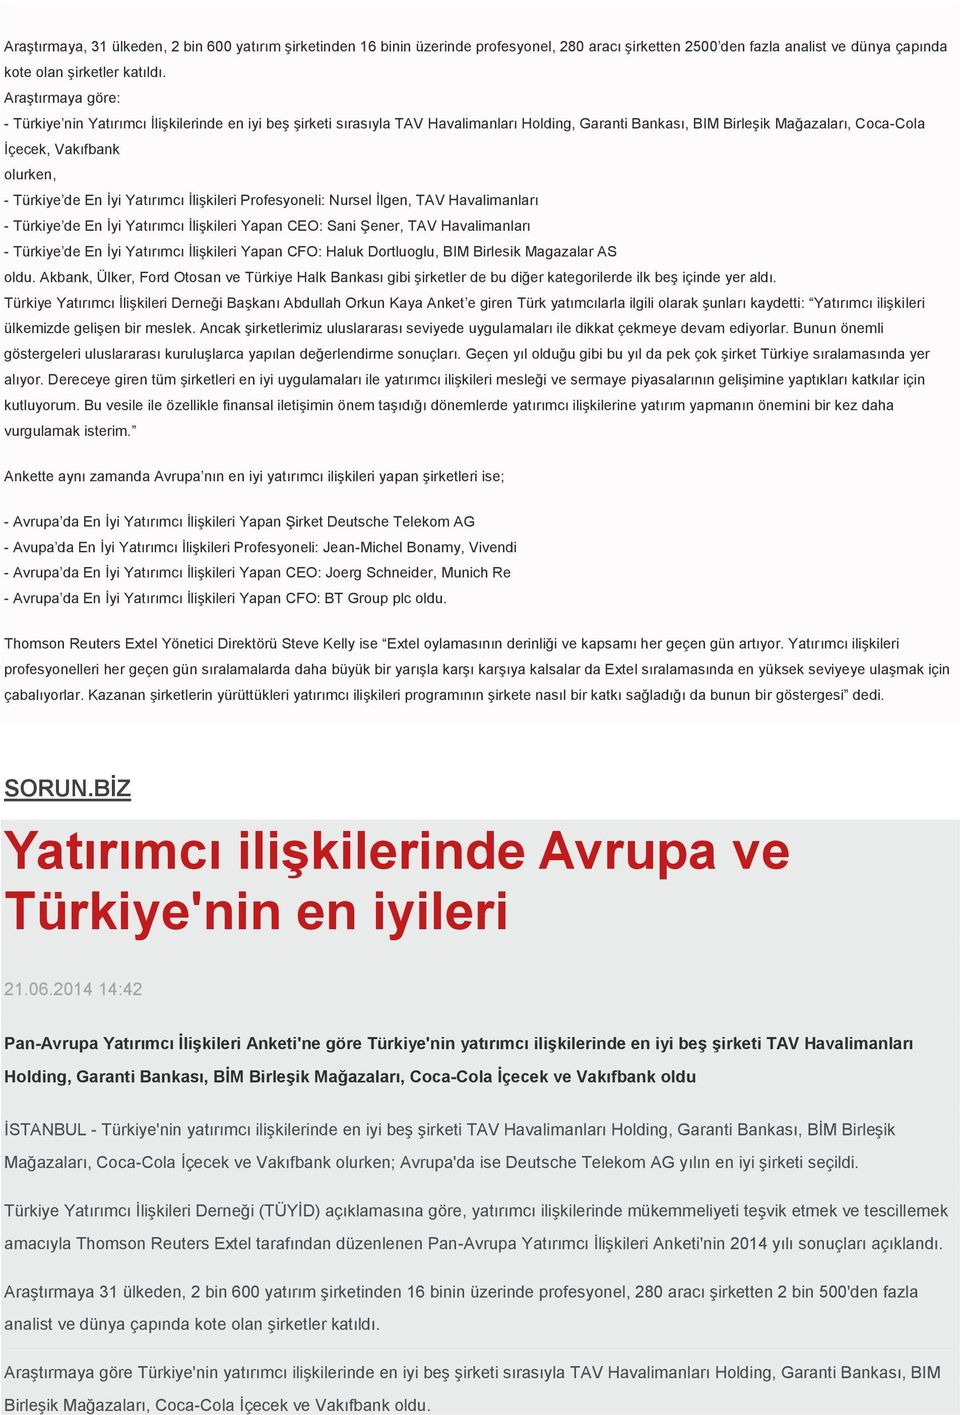 Türkiye de En İyi Yatırımcı İlişkileri Profesyoneli: Nursel İlgen, TAV Havalimanları - Türkiye de En İyi Yatırımcı İlişkileri Yapan CEO: Sani Şener, TAV Havalimanları - Türkiye de En İyi Yatırımcı